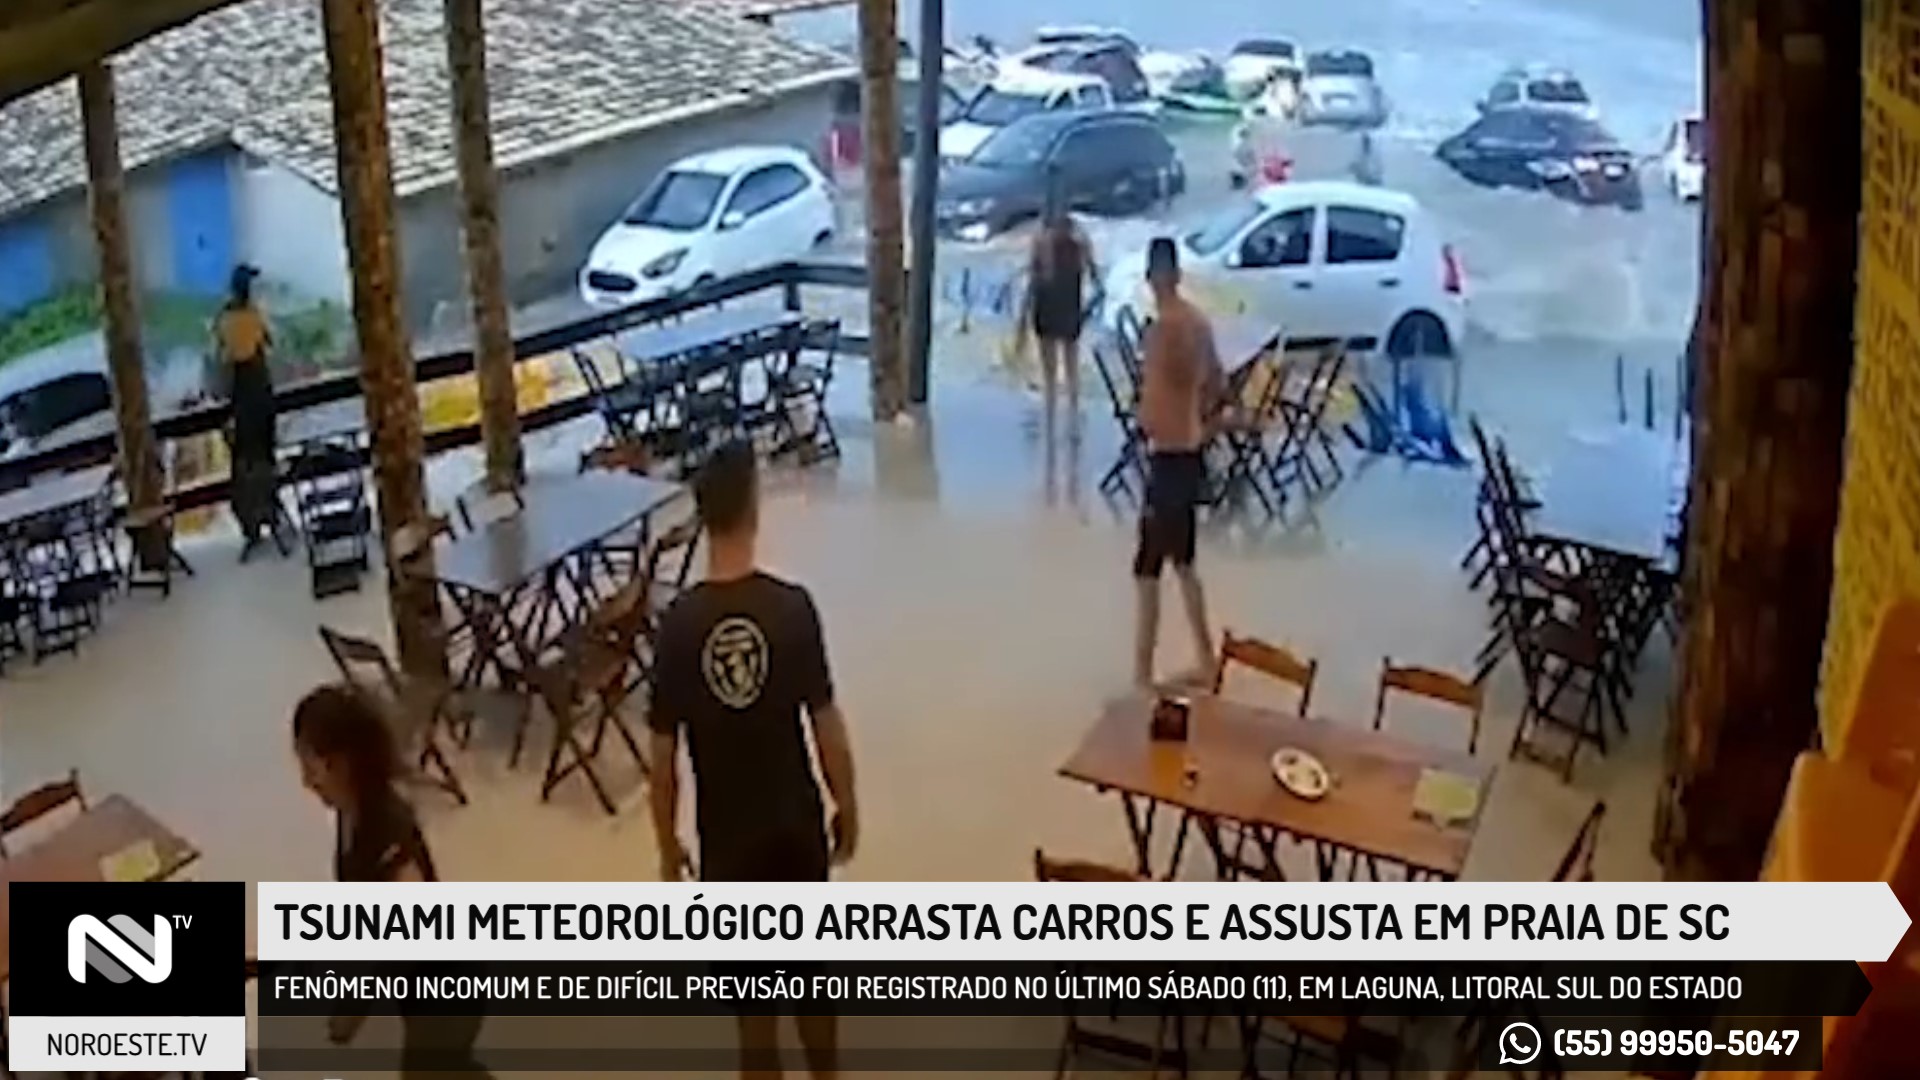 Tsunami meteorológico arrasta carros e assusta frequentadores em praia de Santa Catarina